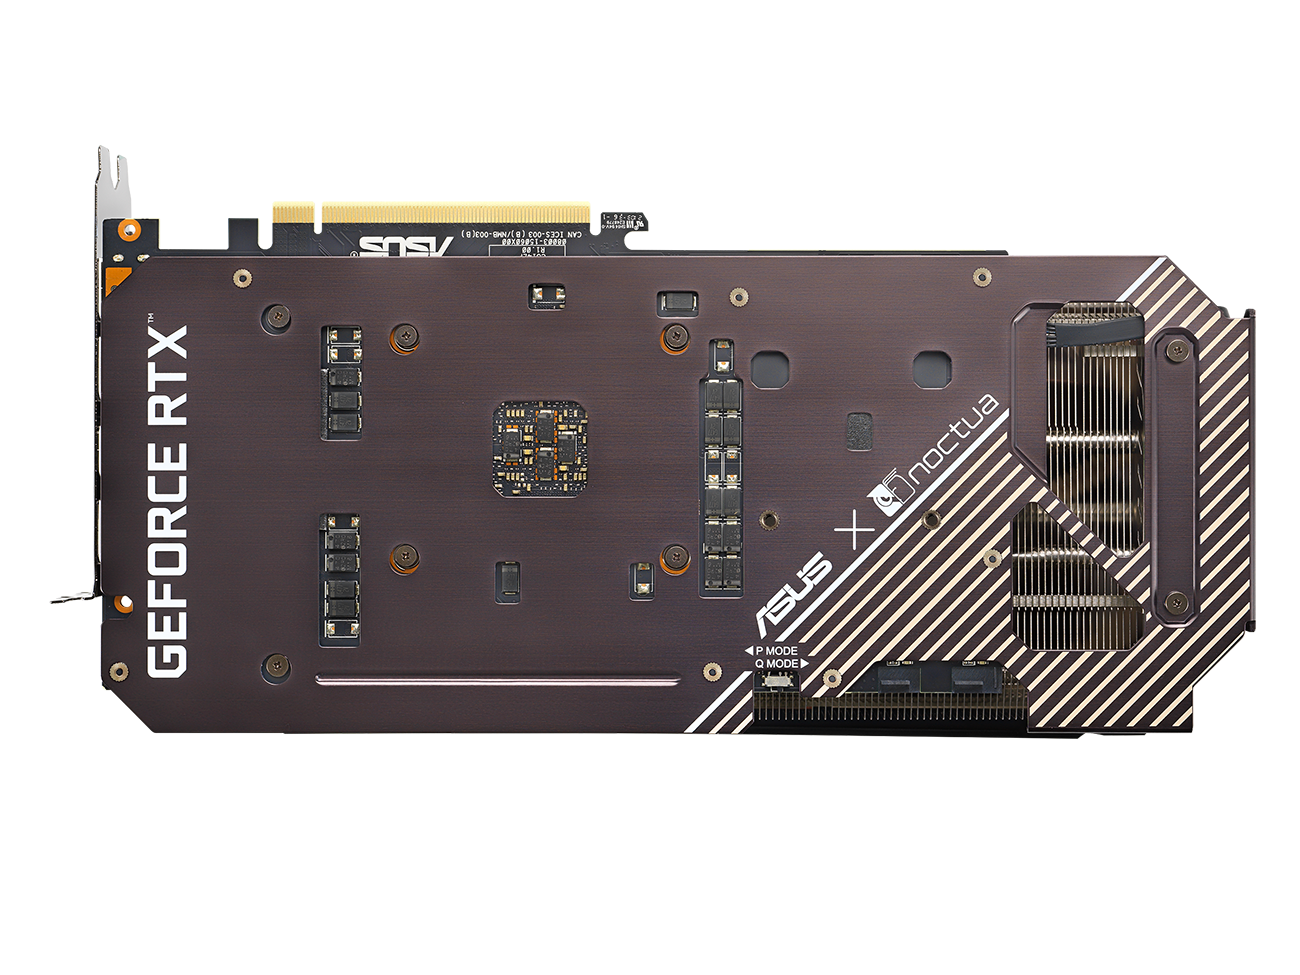 ASUS представила видеокарту GeForce RTX 3070 Noctua Edition